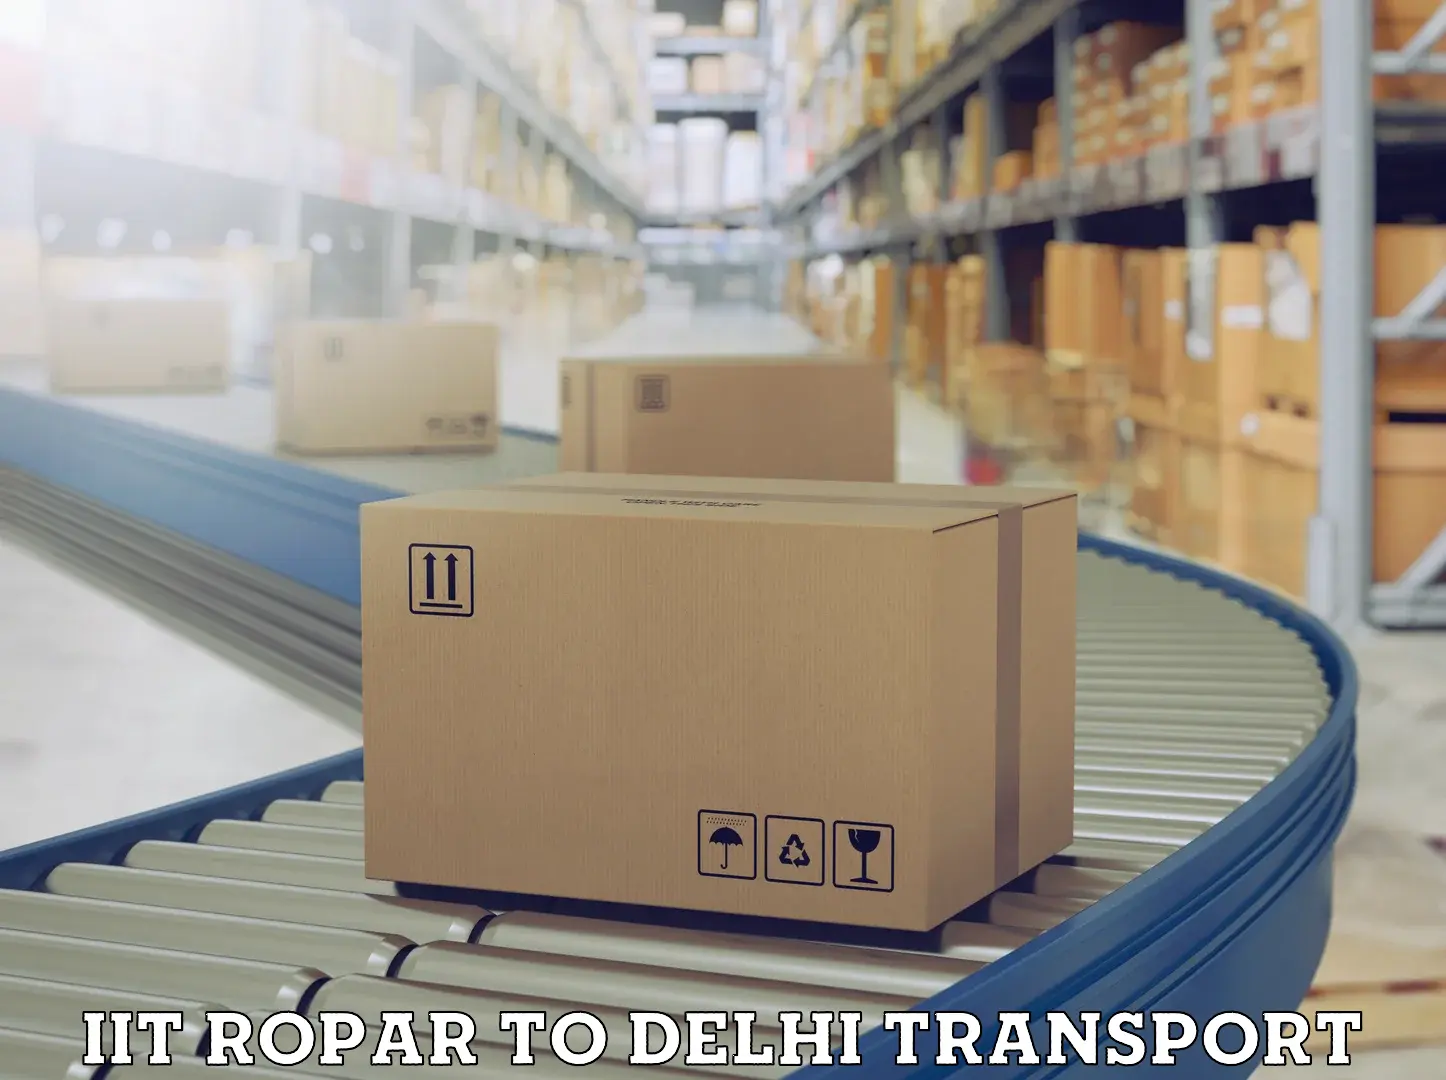 Delivery service IIT Ropar to Jamia Millia Islamia New Delhi